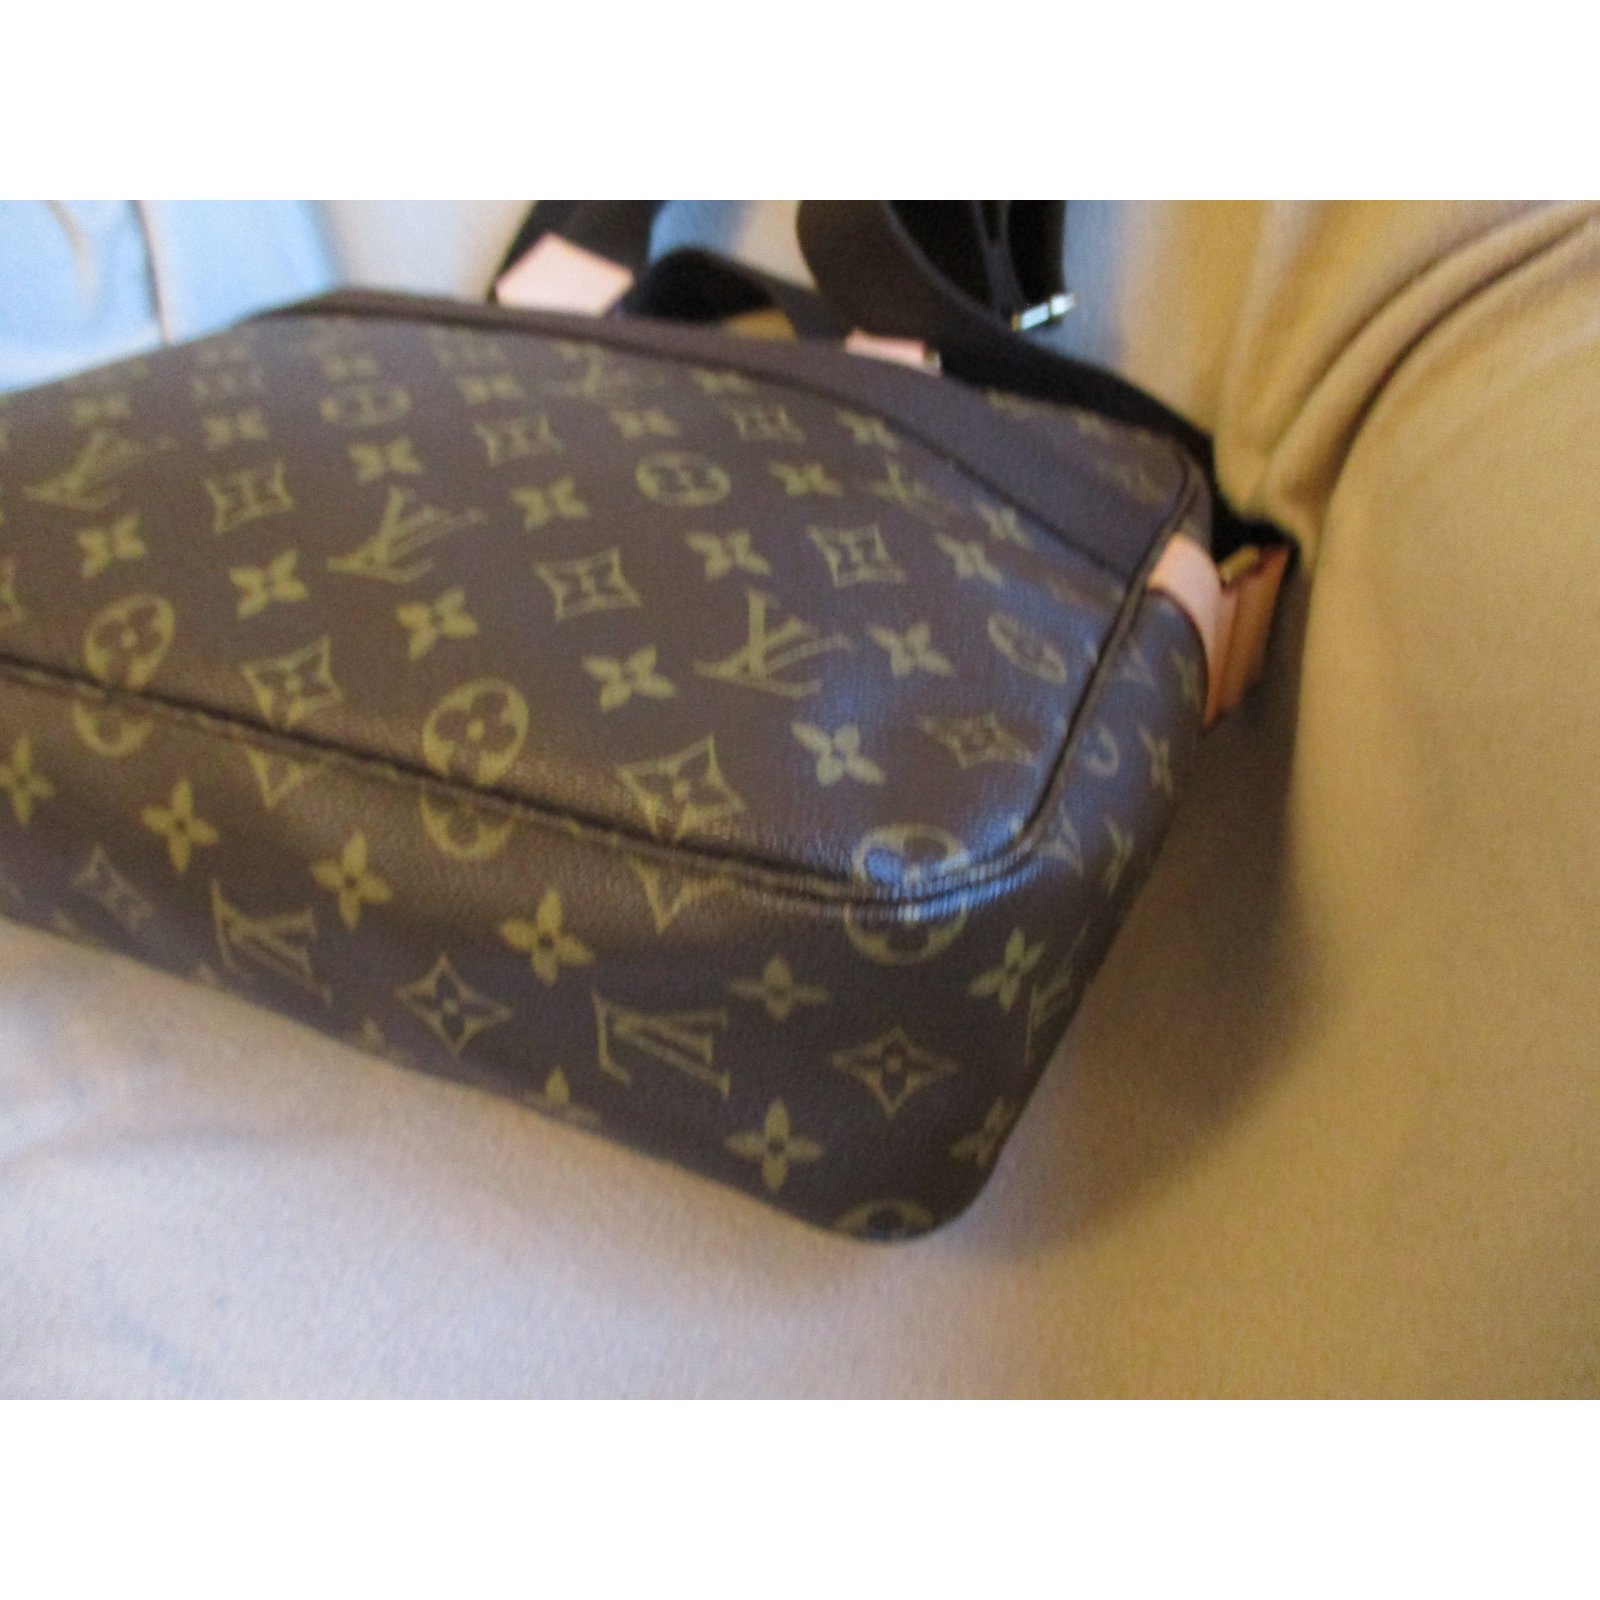 Bag, document holder, Backpack, Travel bag, laptop case, Louis